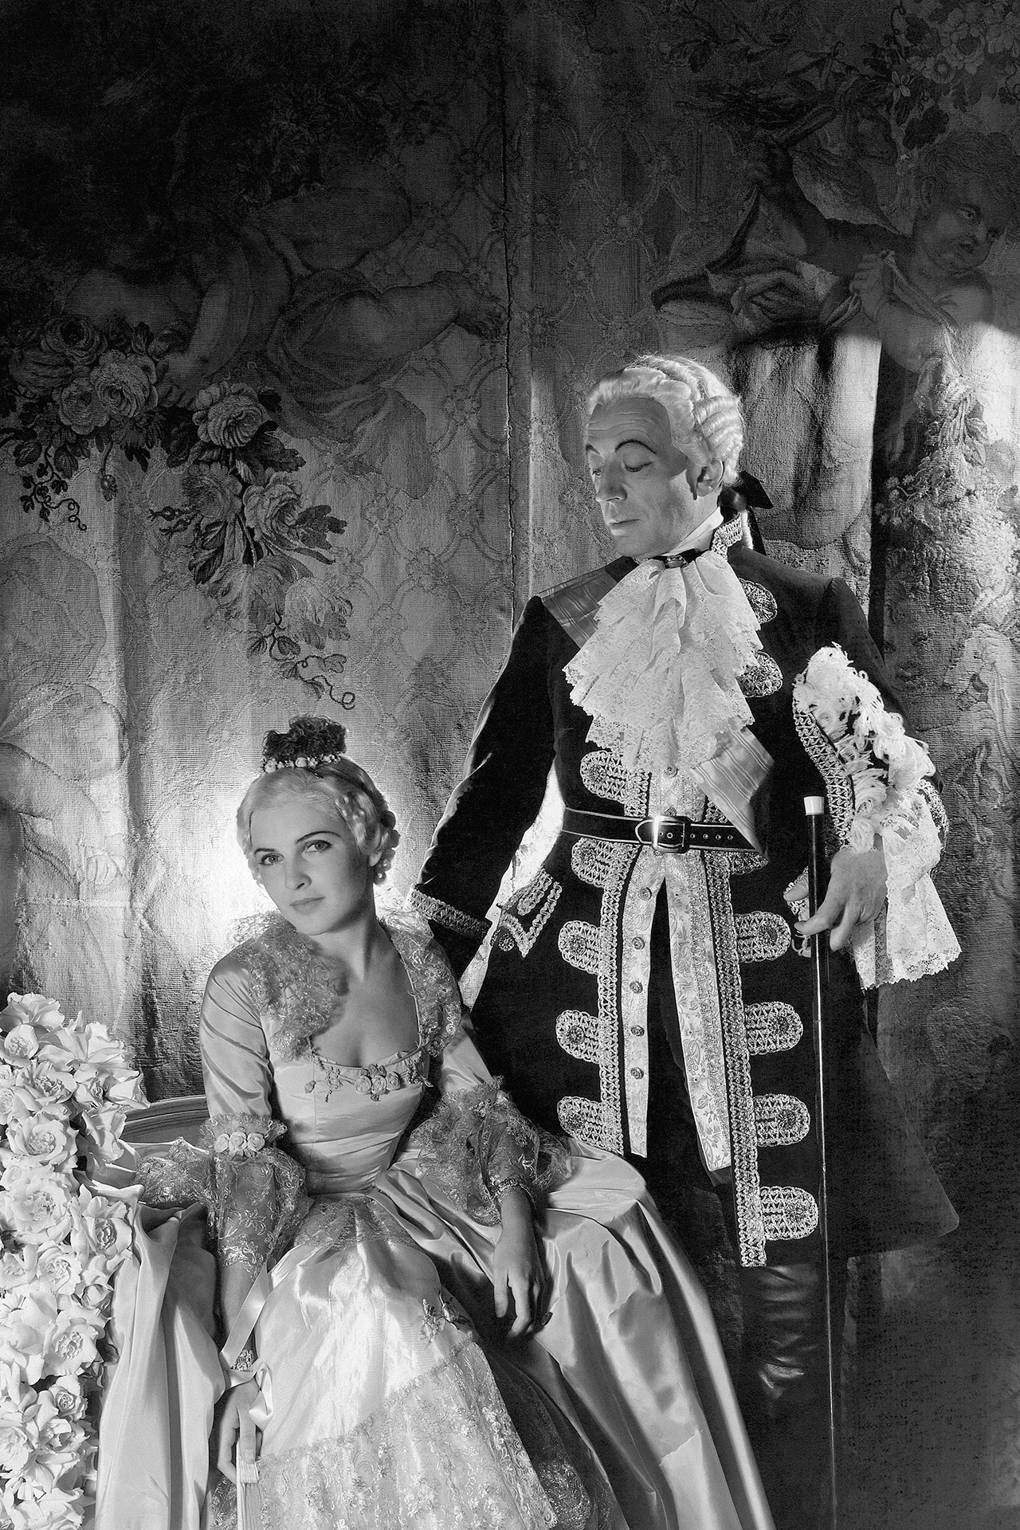 Họa sĩ Boutet de Monvel và bà William S. Paley hóa trang thành Vua Louix XV và Công chúa xứ Lambesc tại Vũ hội Opera thứ hai ở Thành phố New York, năm 1934